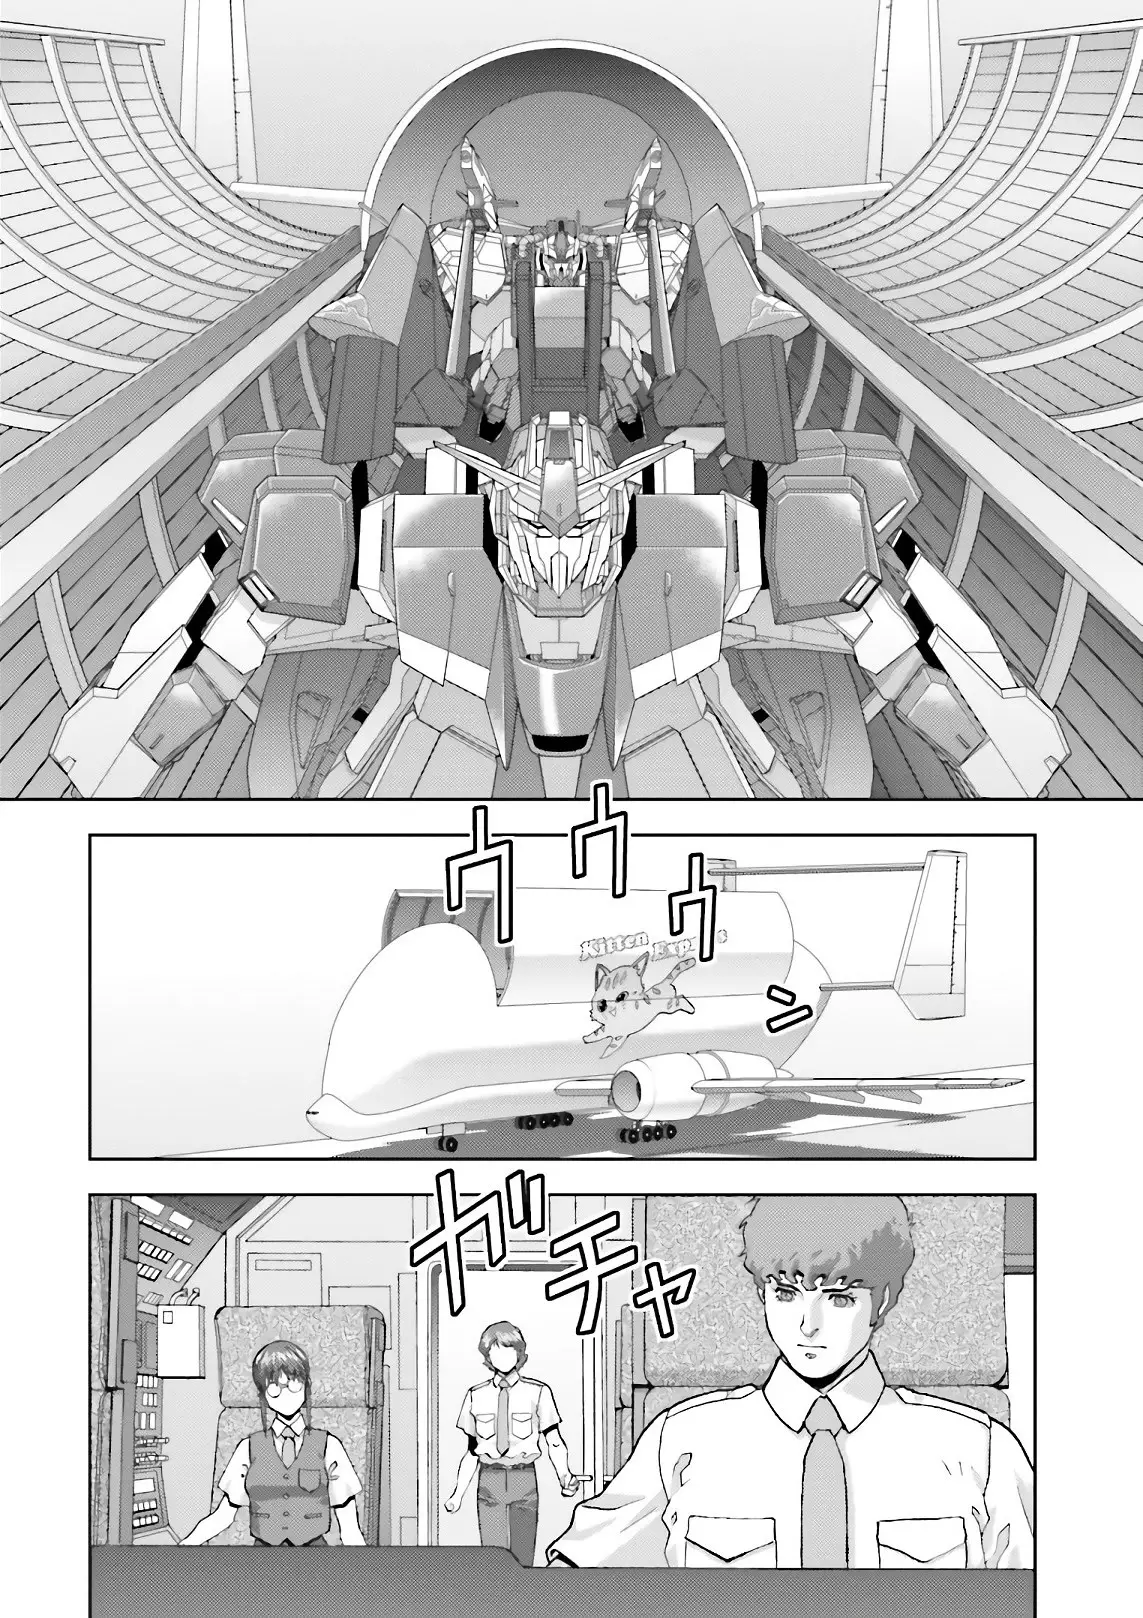 Mobile Suit Zeta Gundam - Define - 56 page 33-6c9397ff